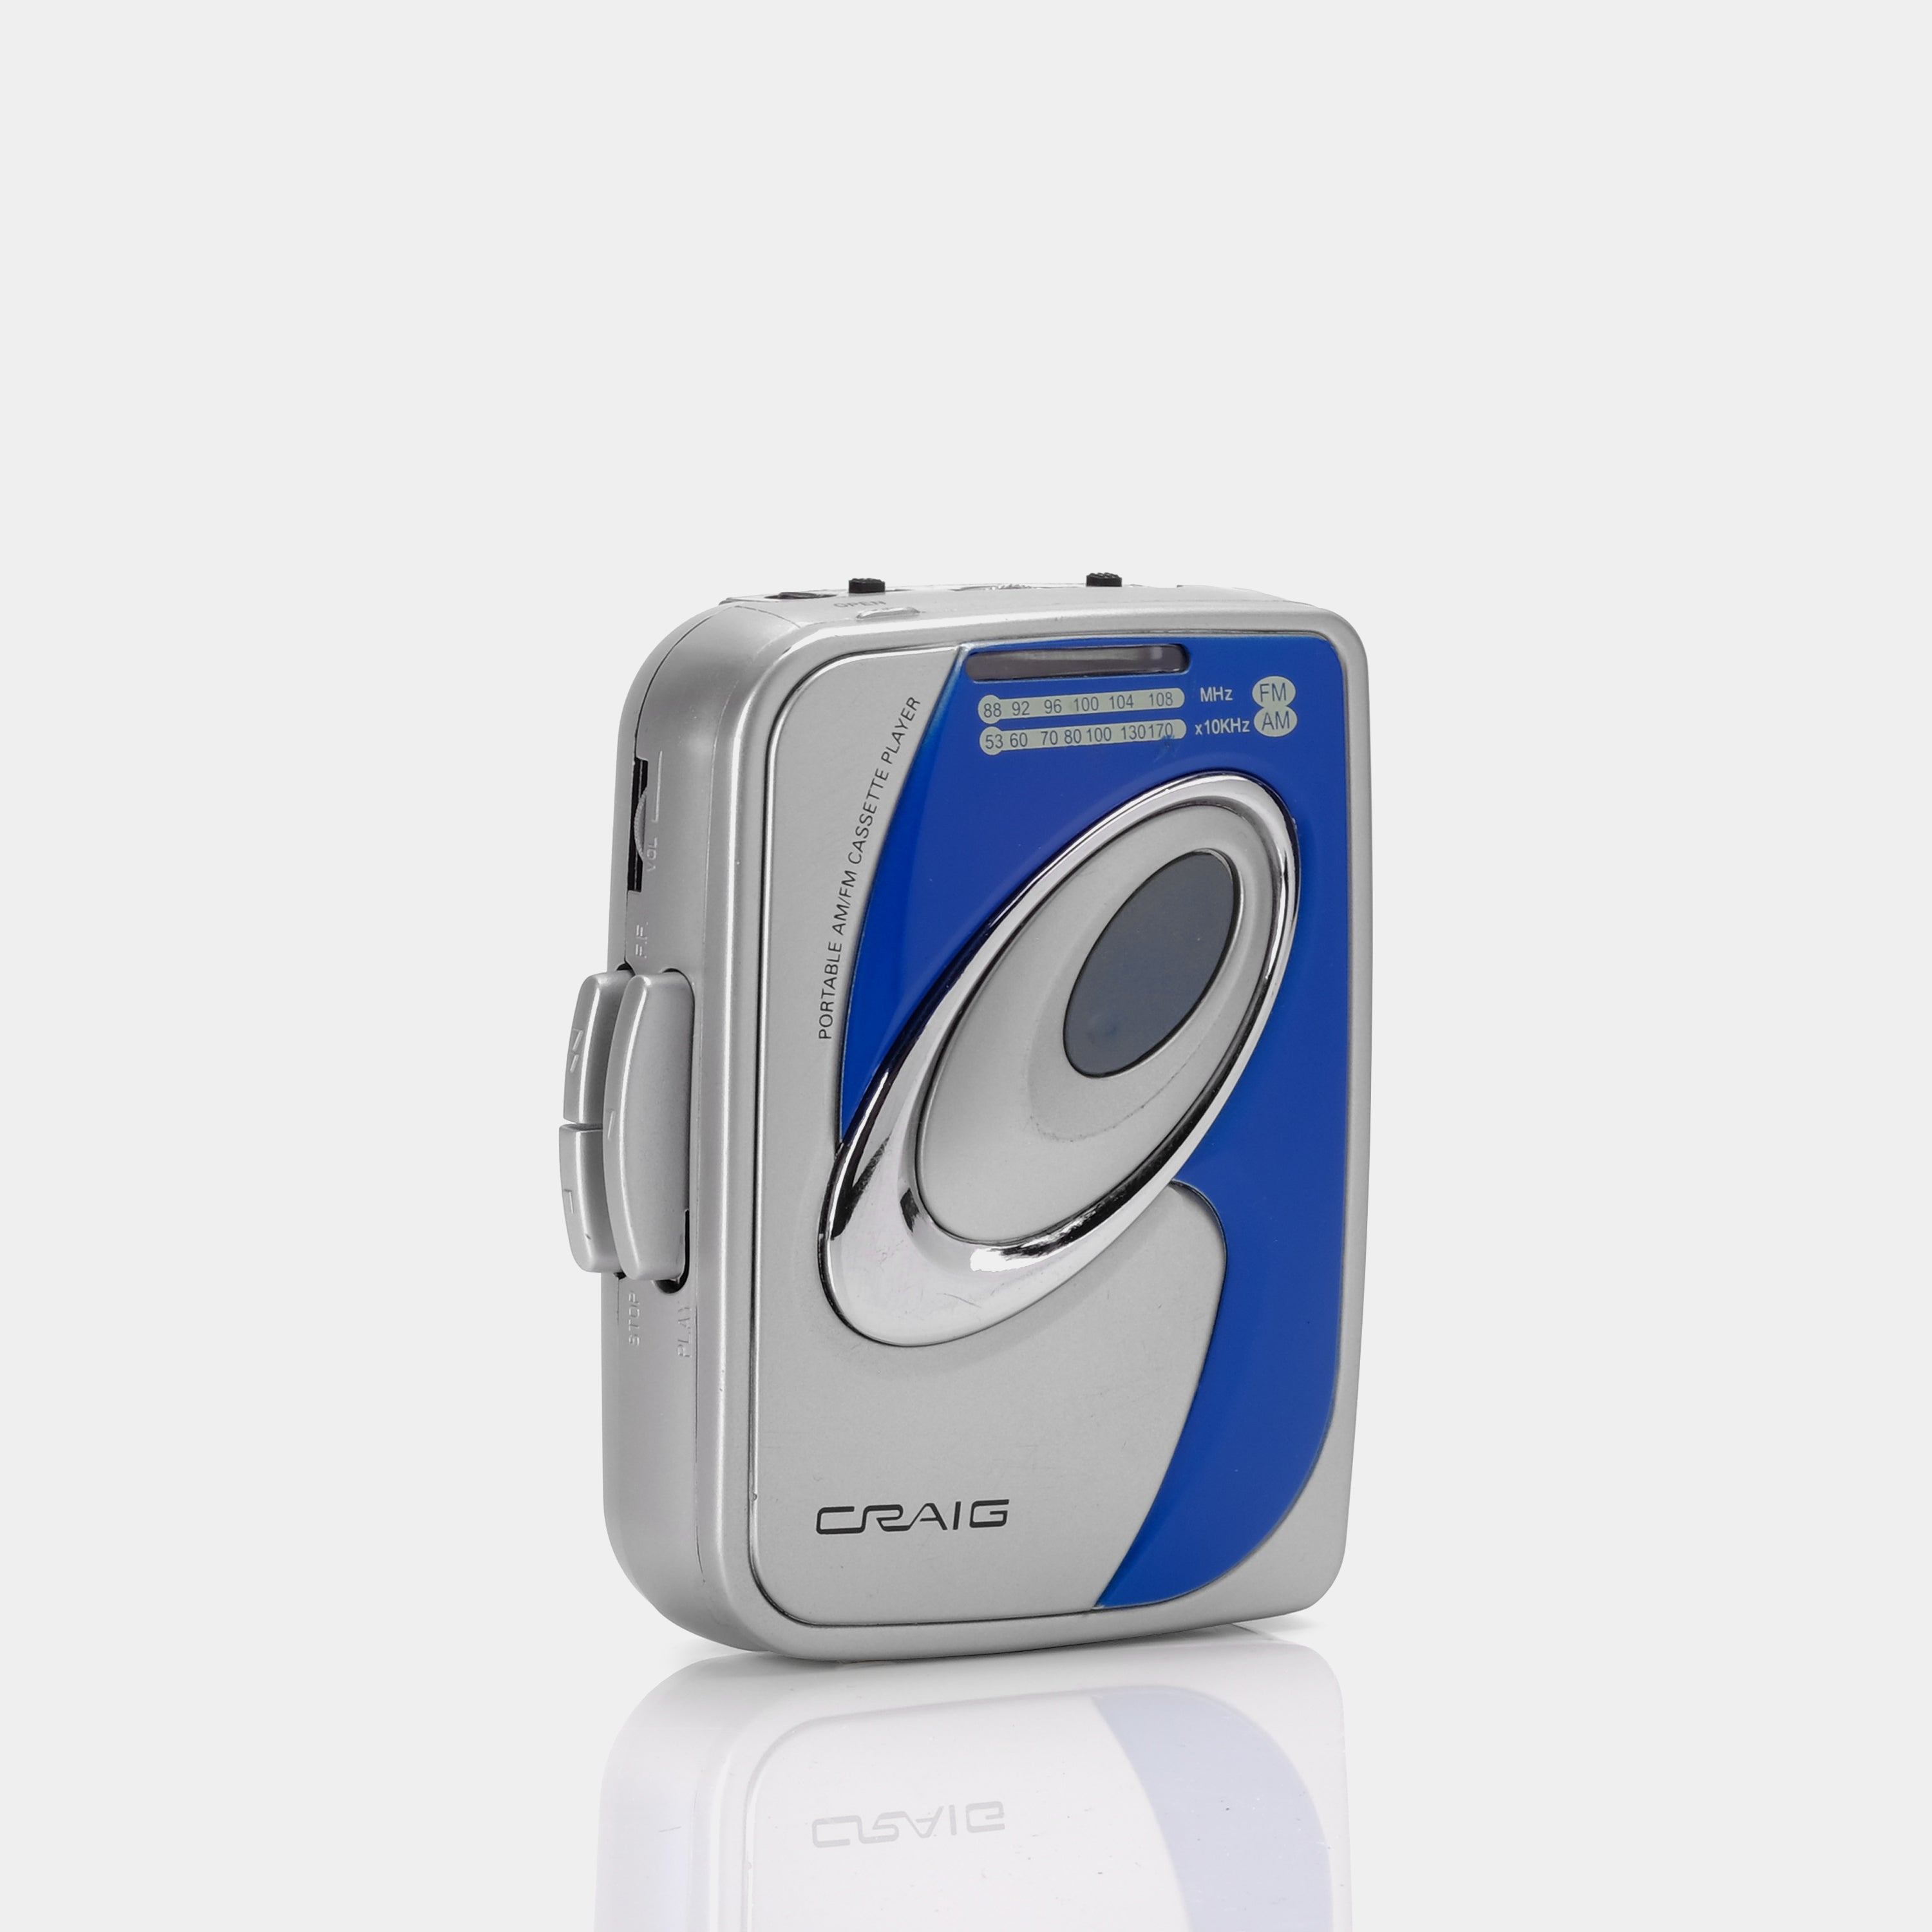 Craig CS2301A AM/FM Portable Cassette Player